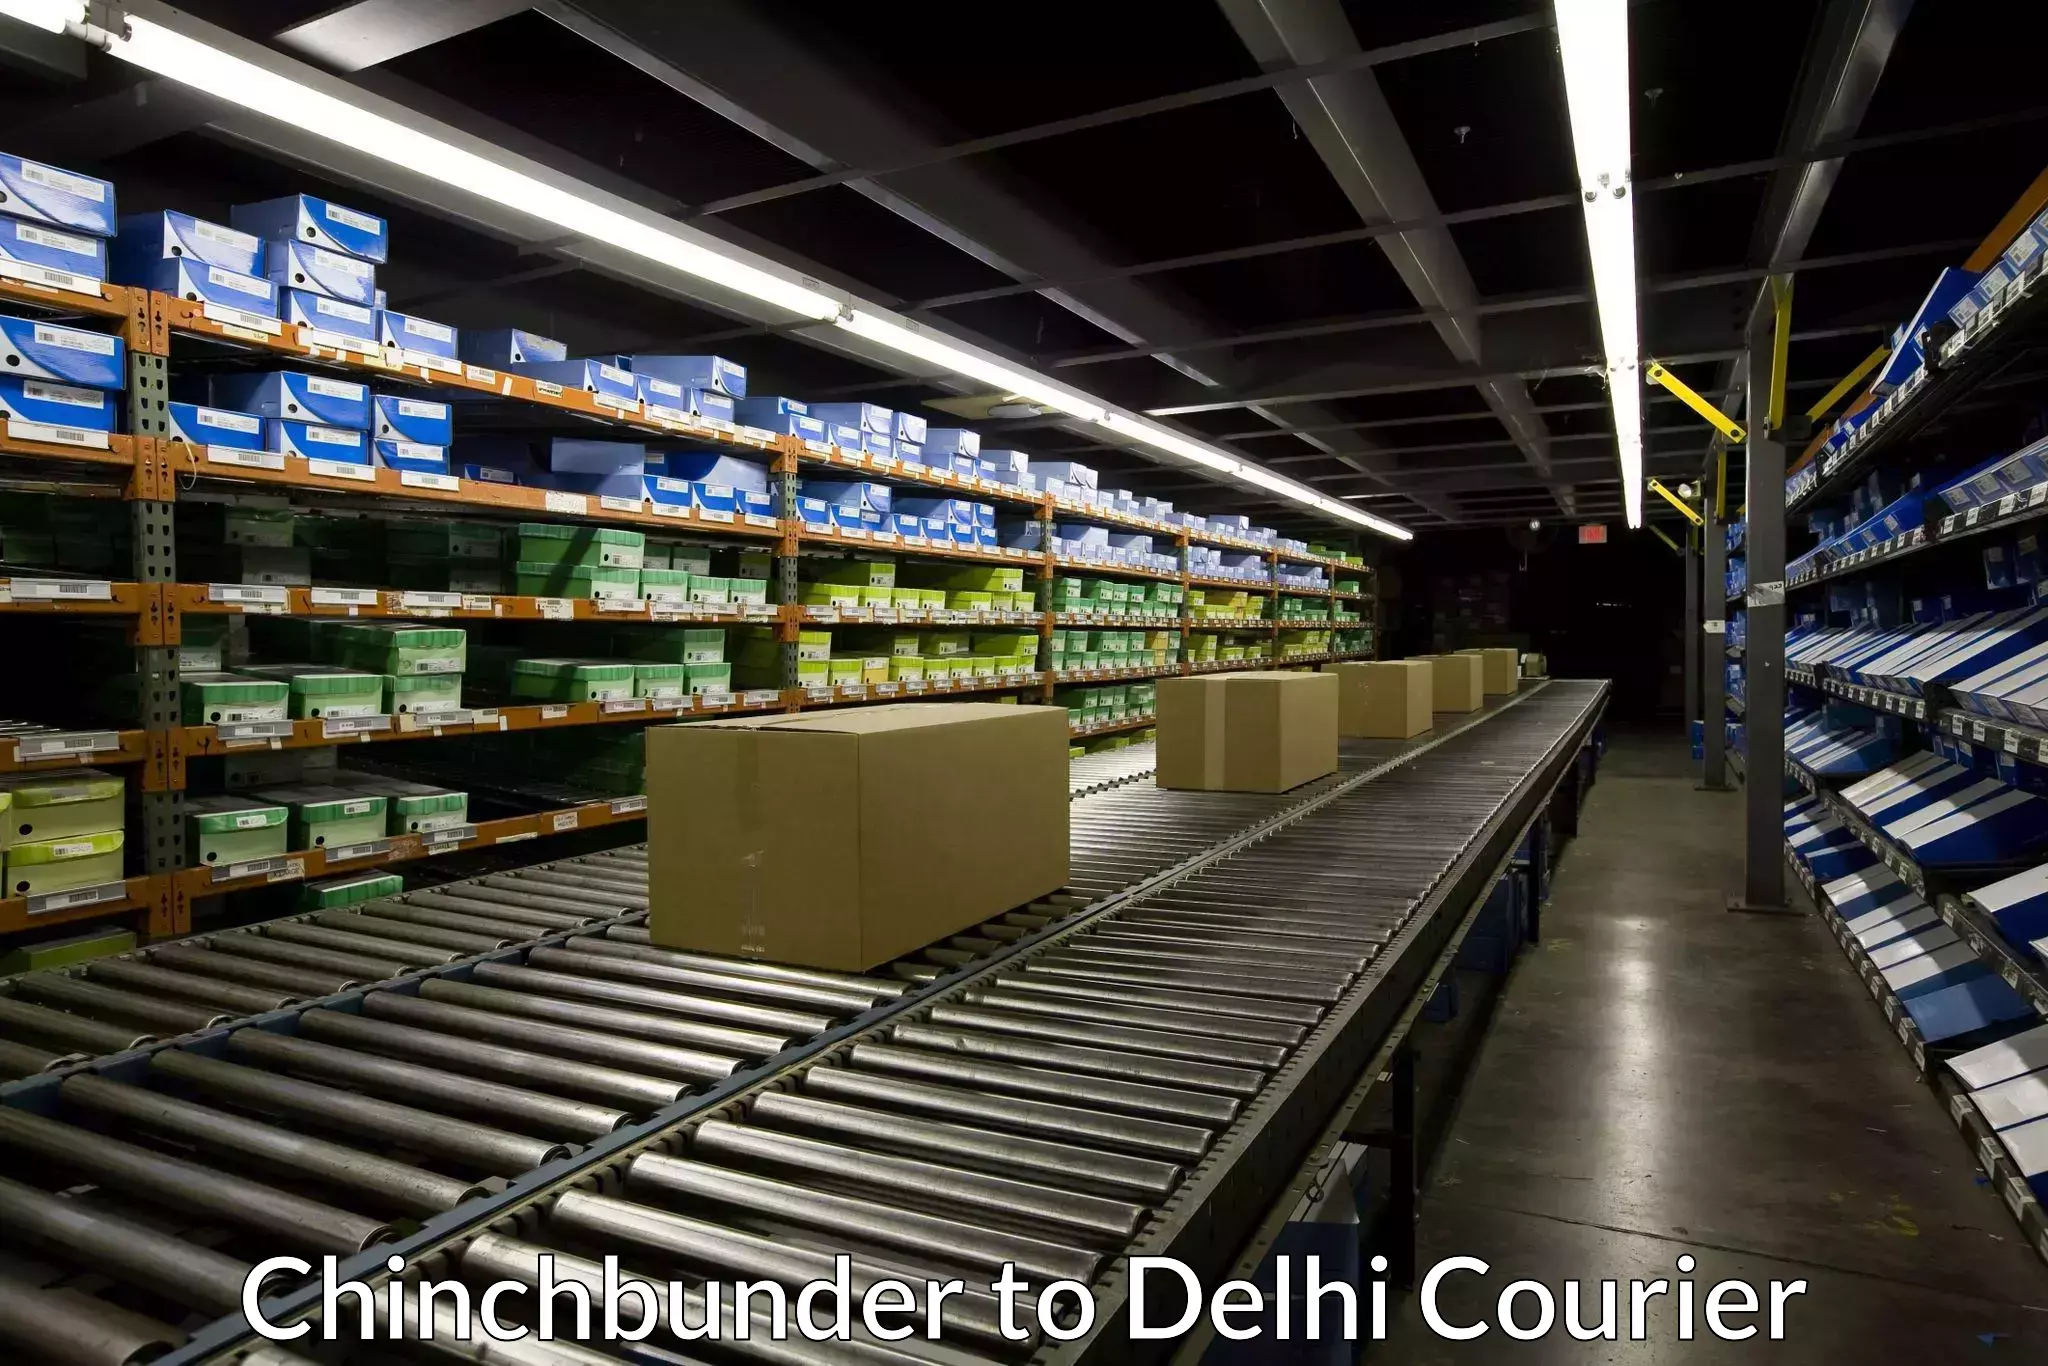 High-priority parcel service Chinchbunder to Kalkaji